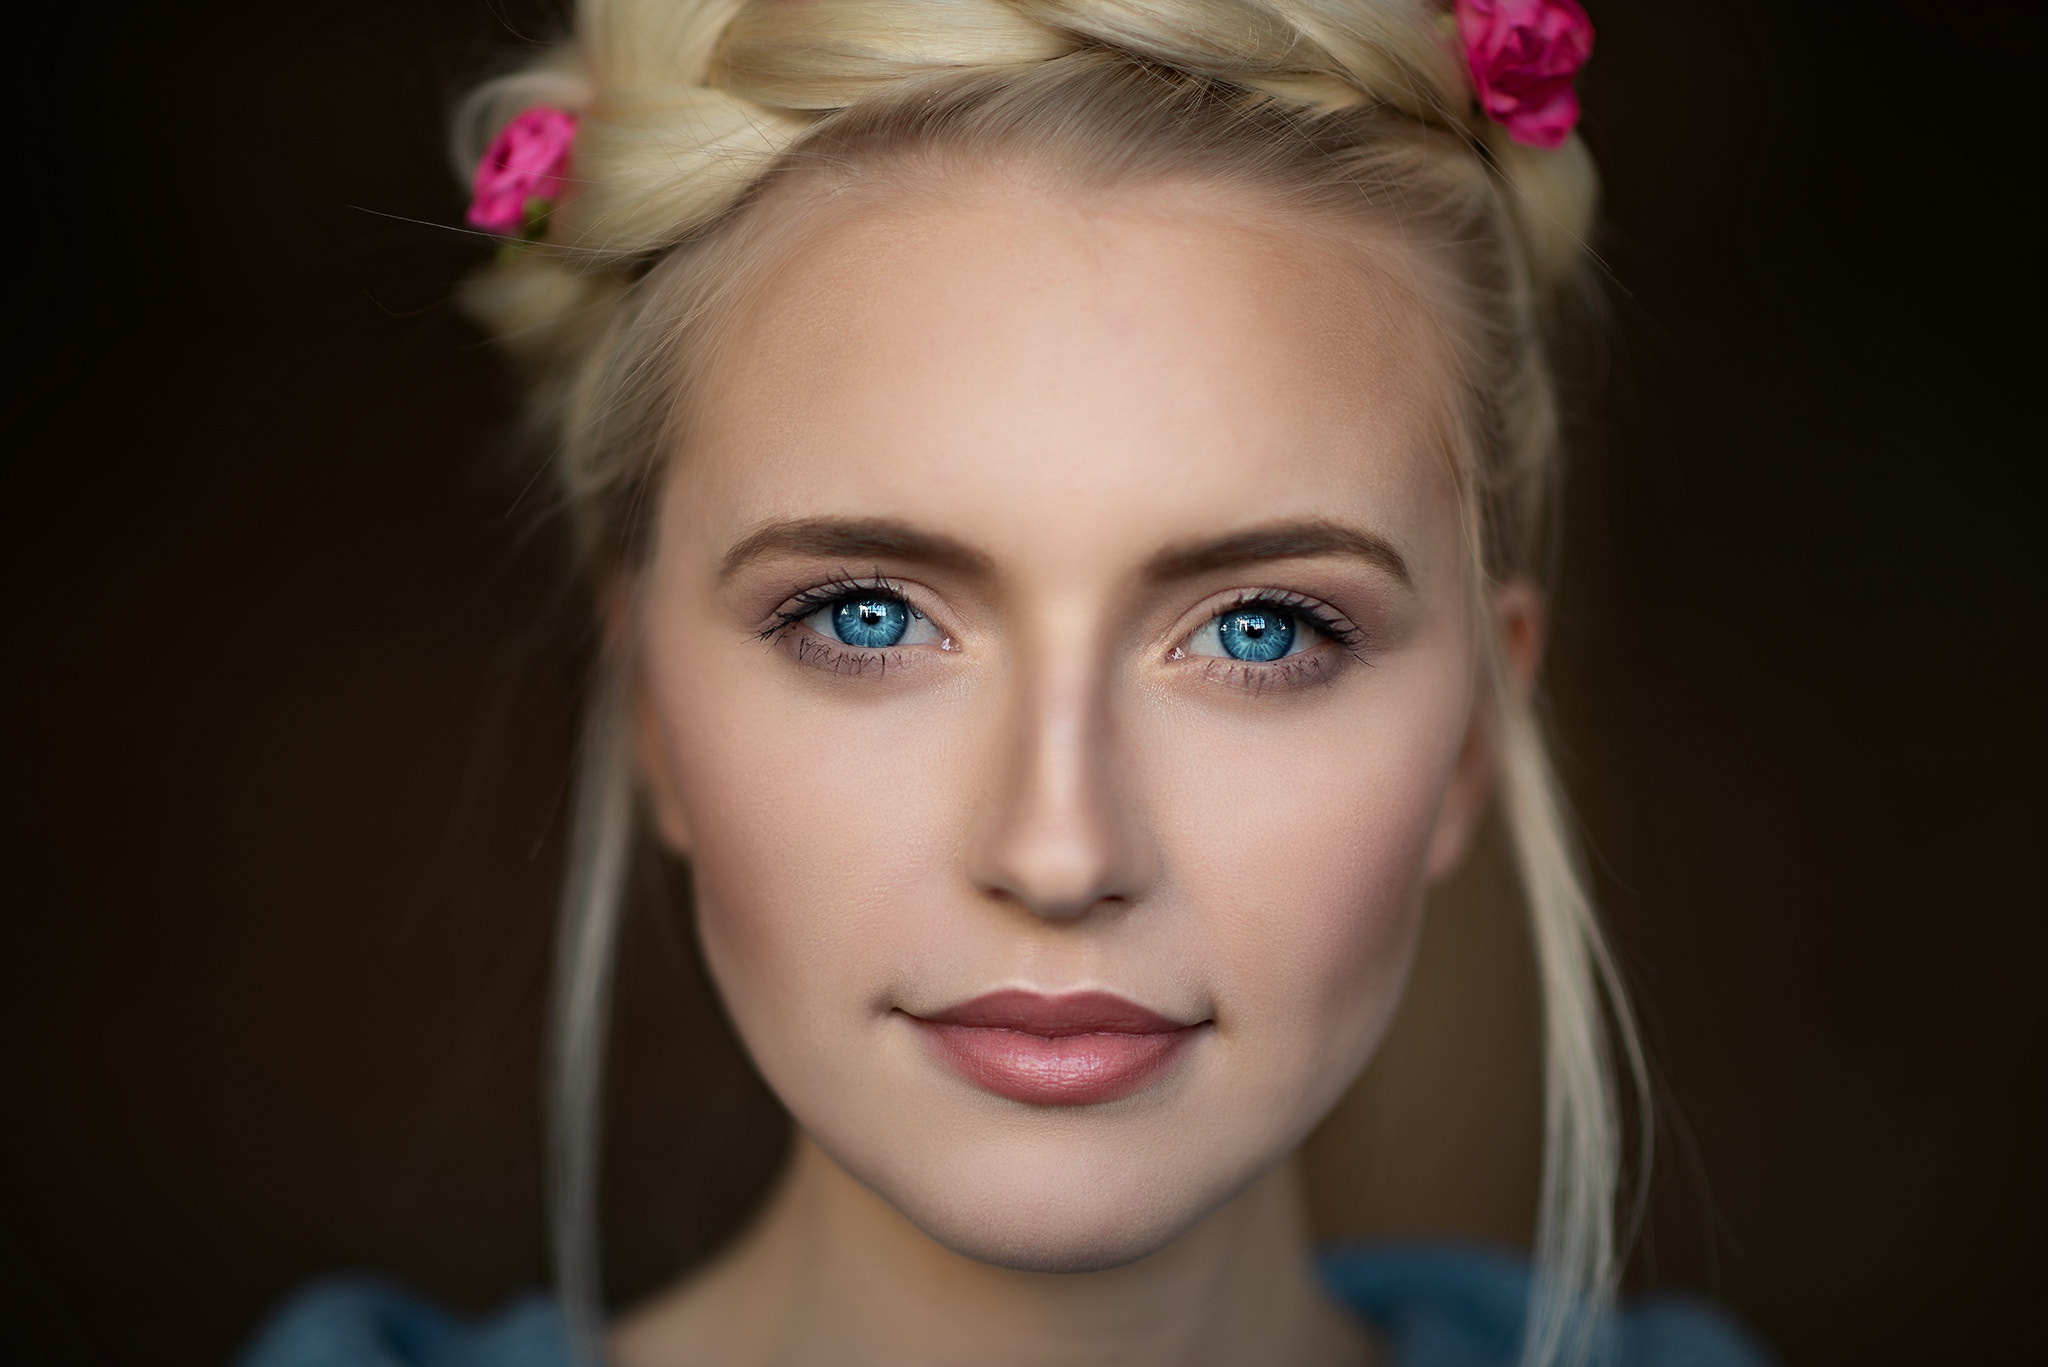 People 2048x1367 blonde blue eyes women model portrait face Mark Prinz closeup flower in hair